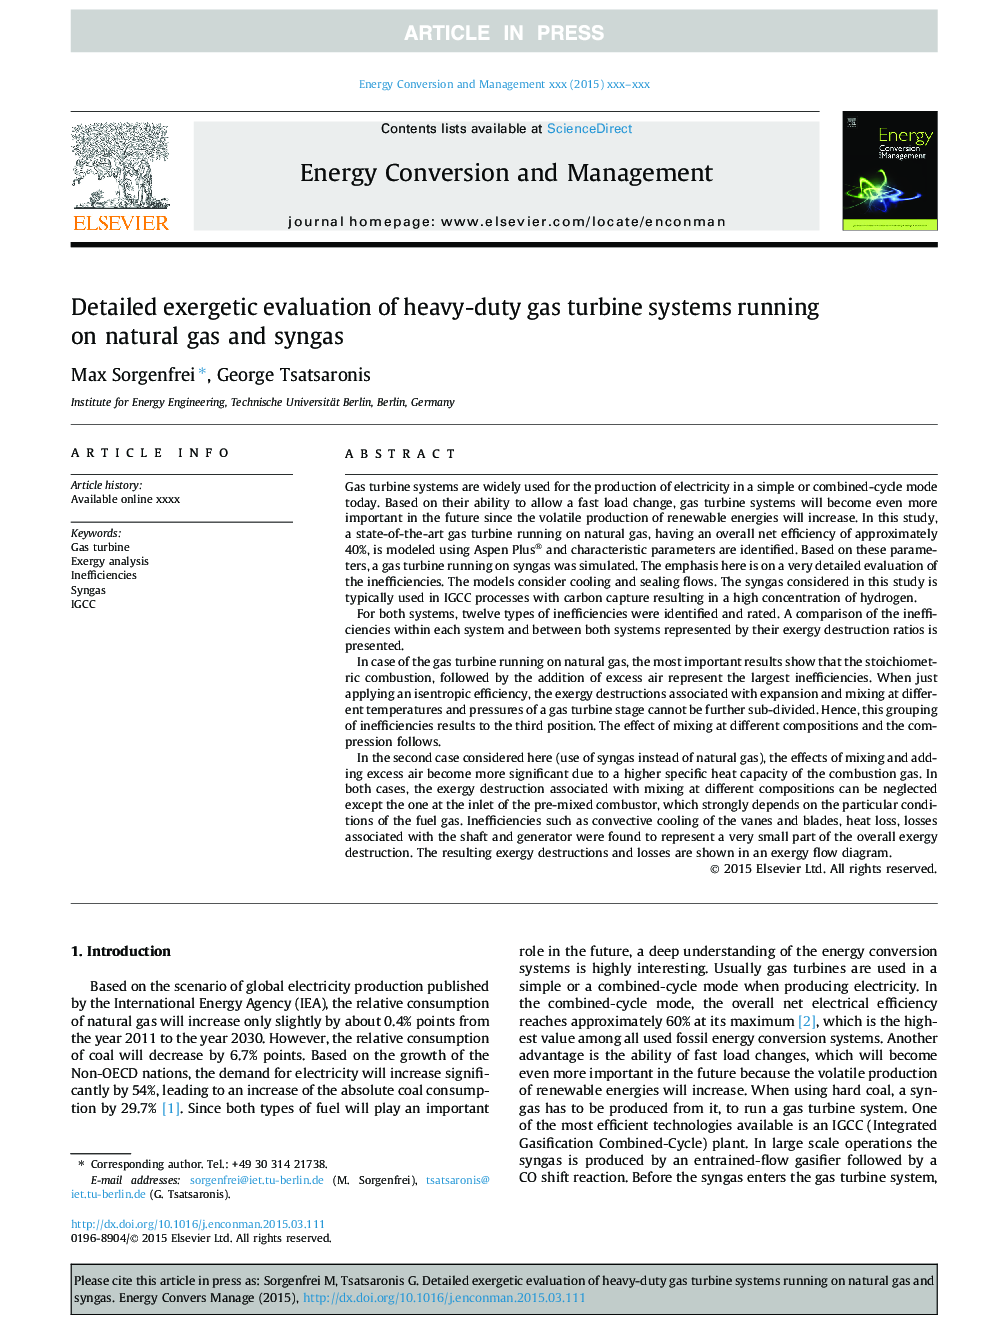 ارزیابی گسترده ای از سیستم های توربین گاز سنگین که در حال اجرا بر روی گاز طبیعی و گاز سنتز هستند 